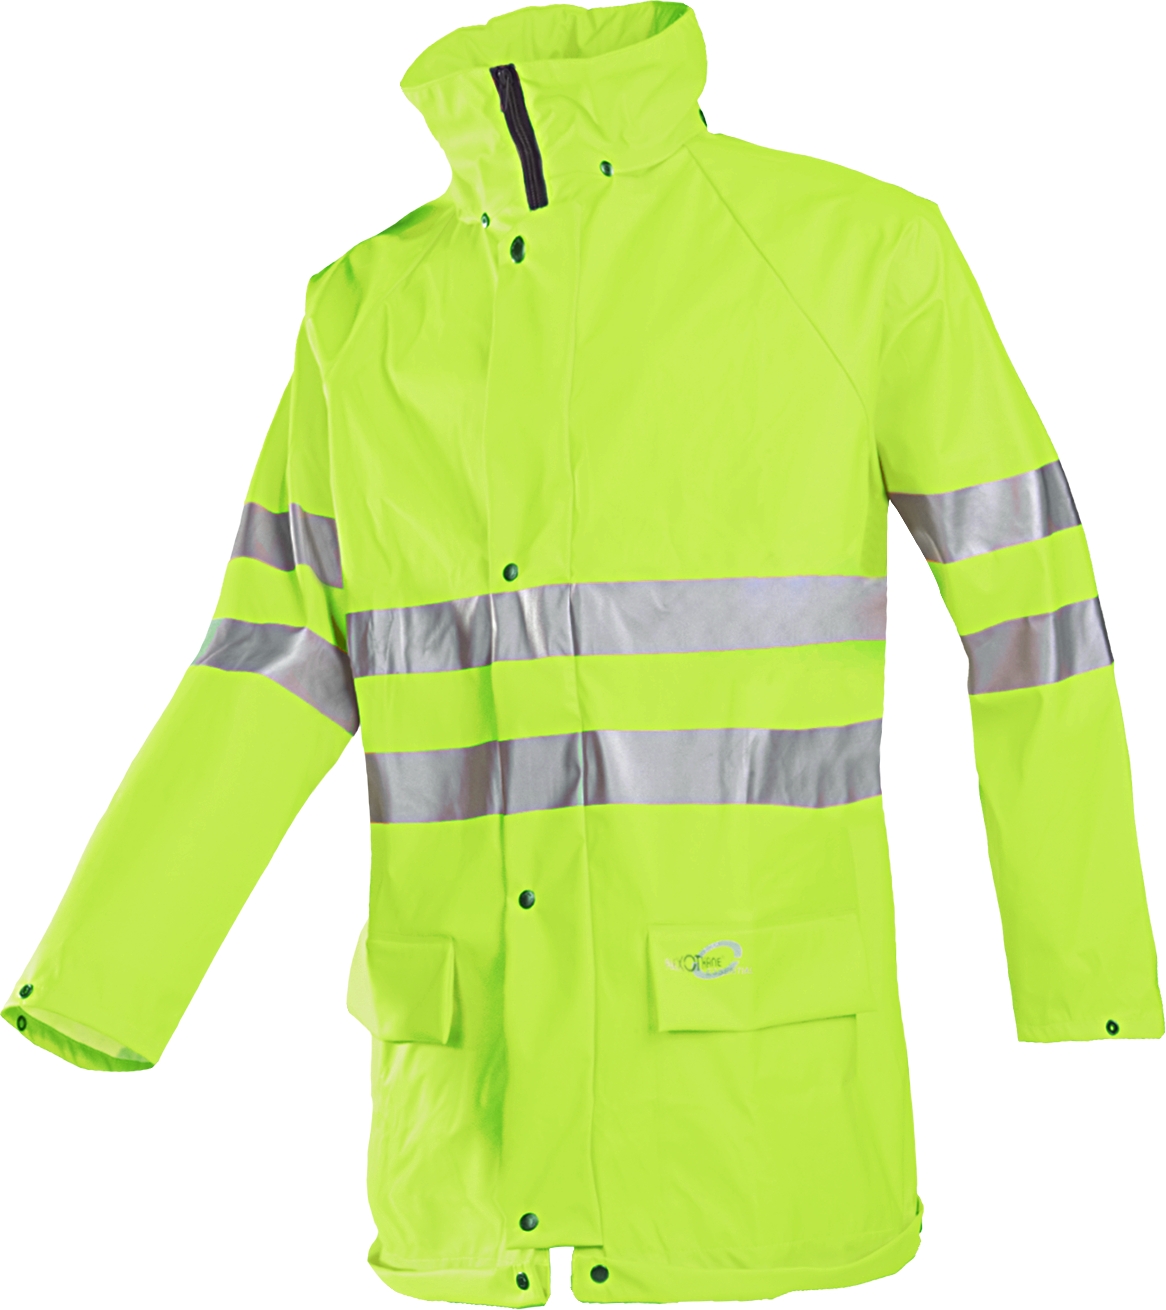 REINDL, Warnschutz-Regenschutz-Jacke